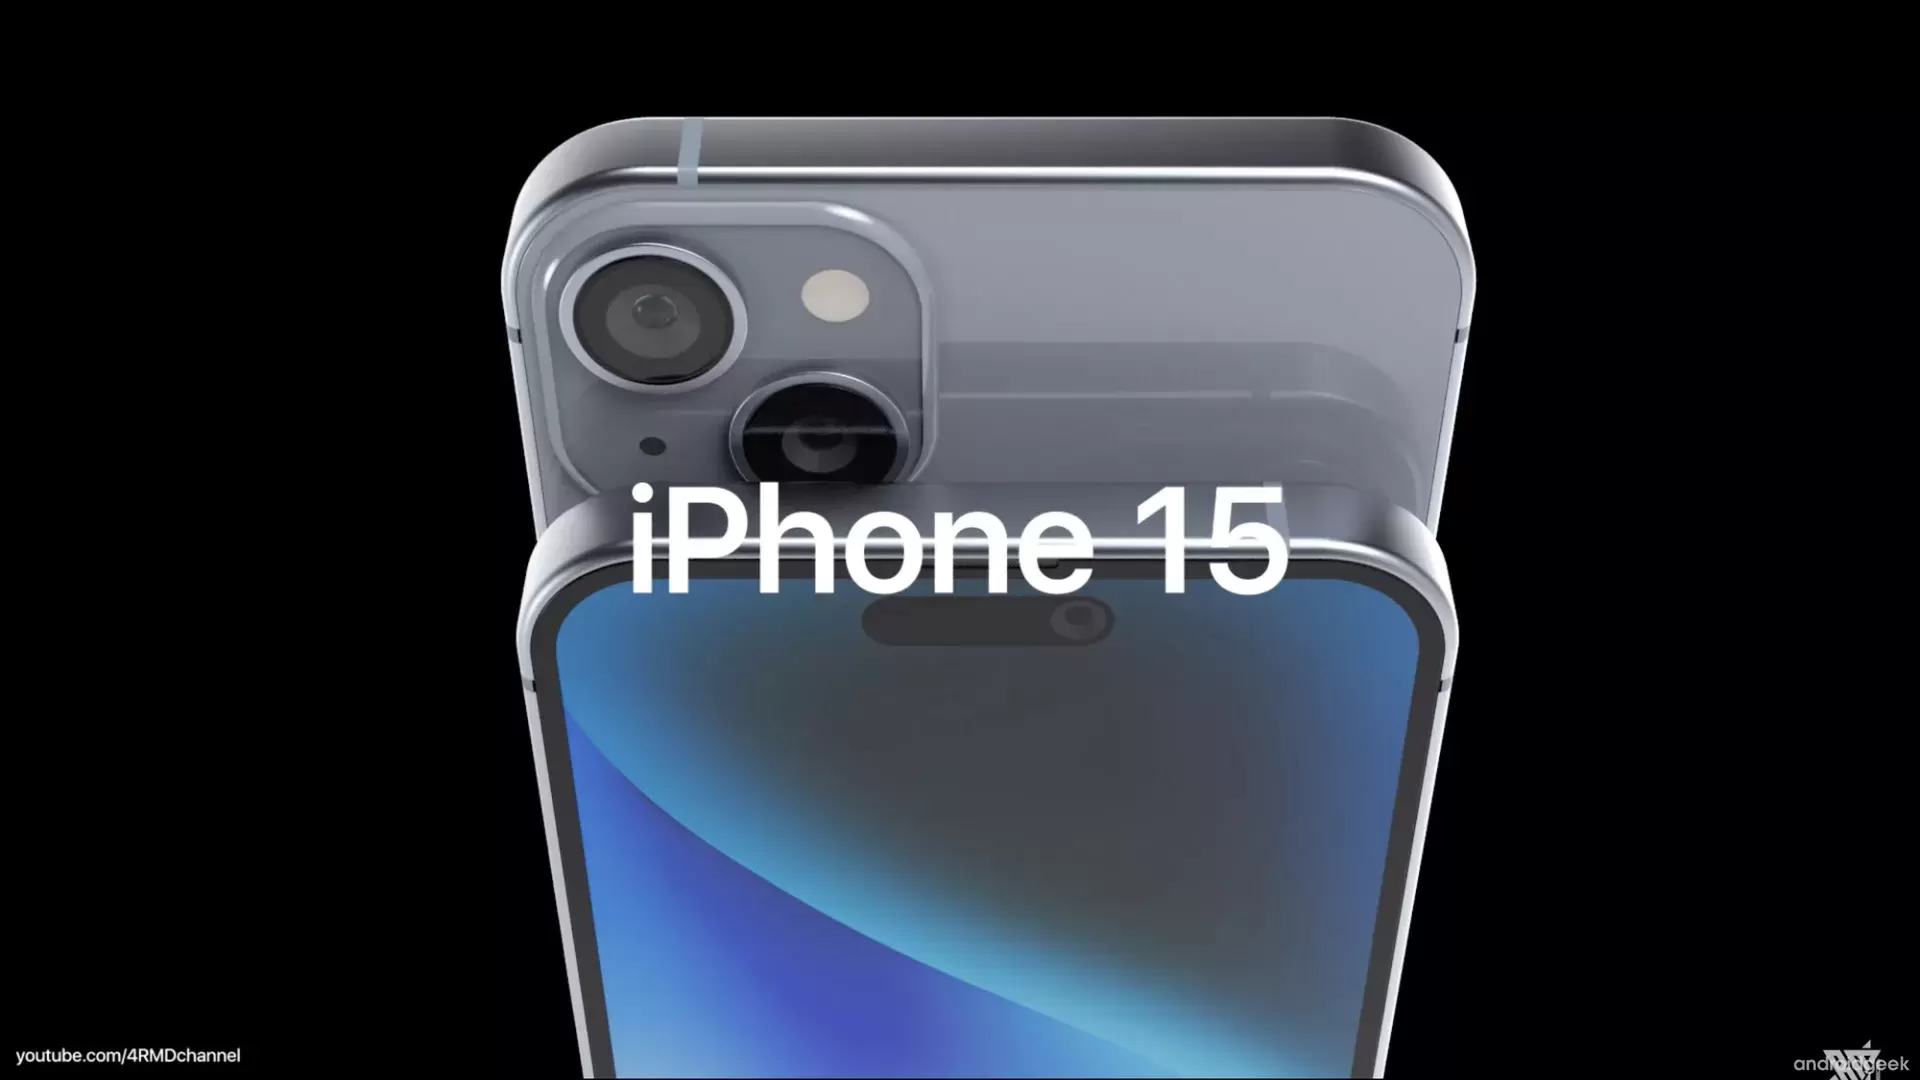 iPhone 15 da Apple poderá não ter espaço para o cartão SIM, e recorrer apenas ao eSIM 4